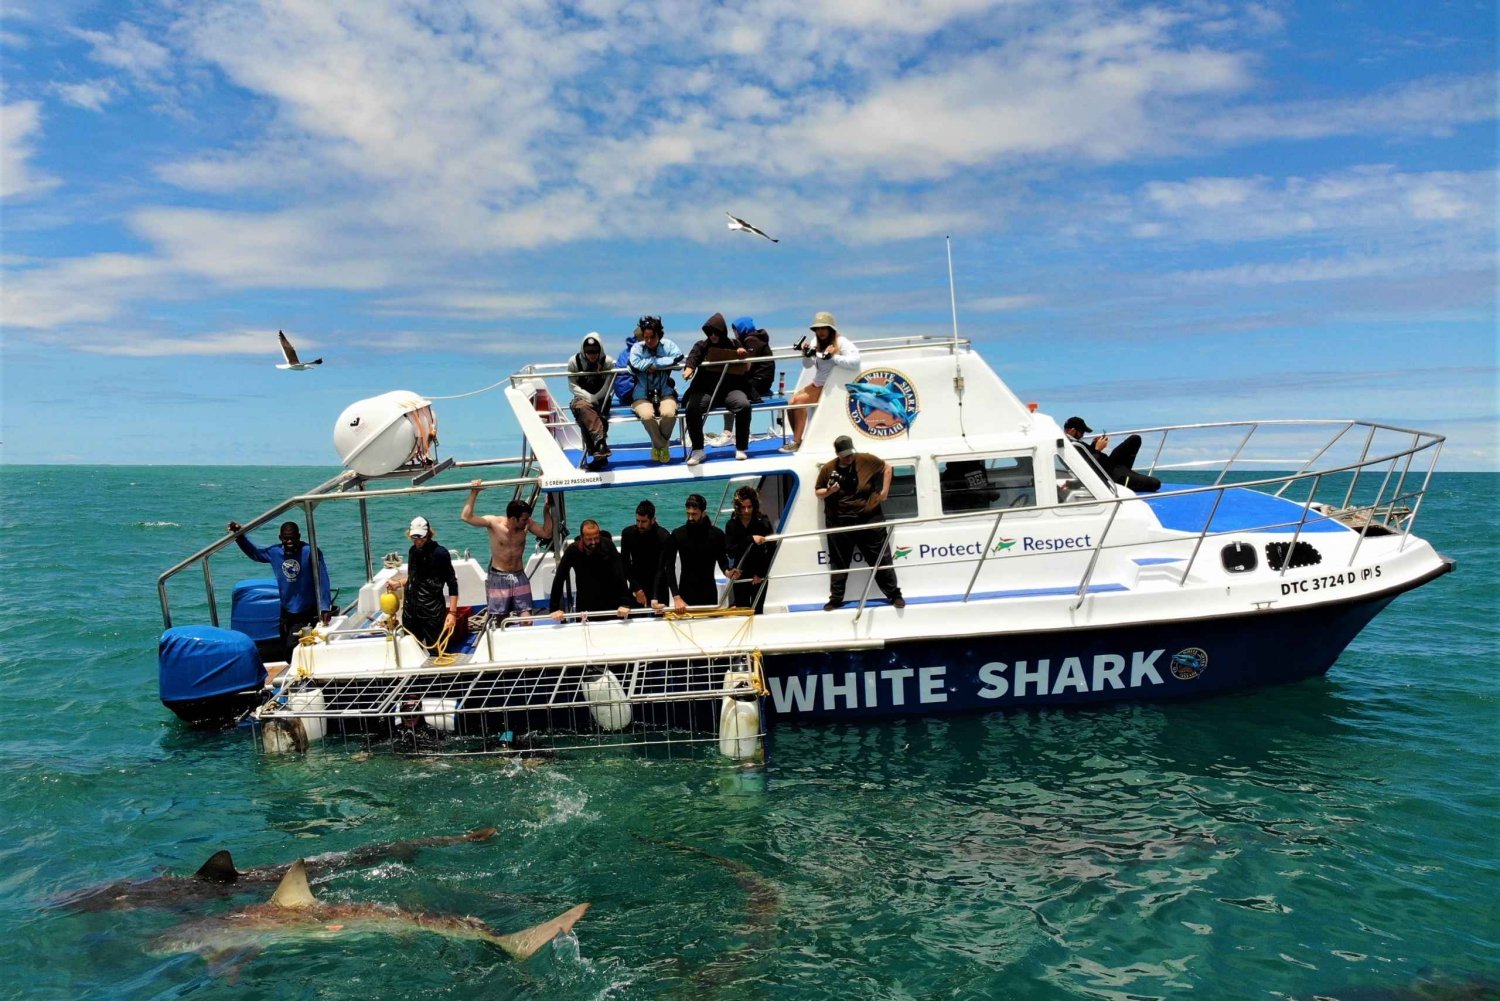 Gansbaai: Haikäfig-Tauchgang und Beobachtung an Bord